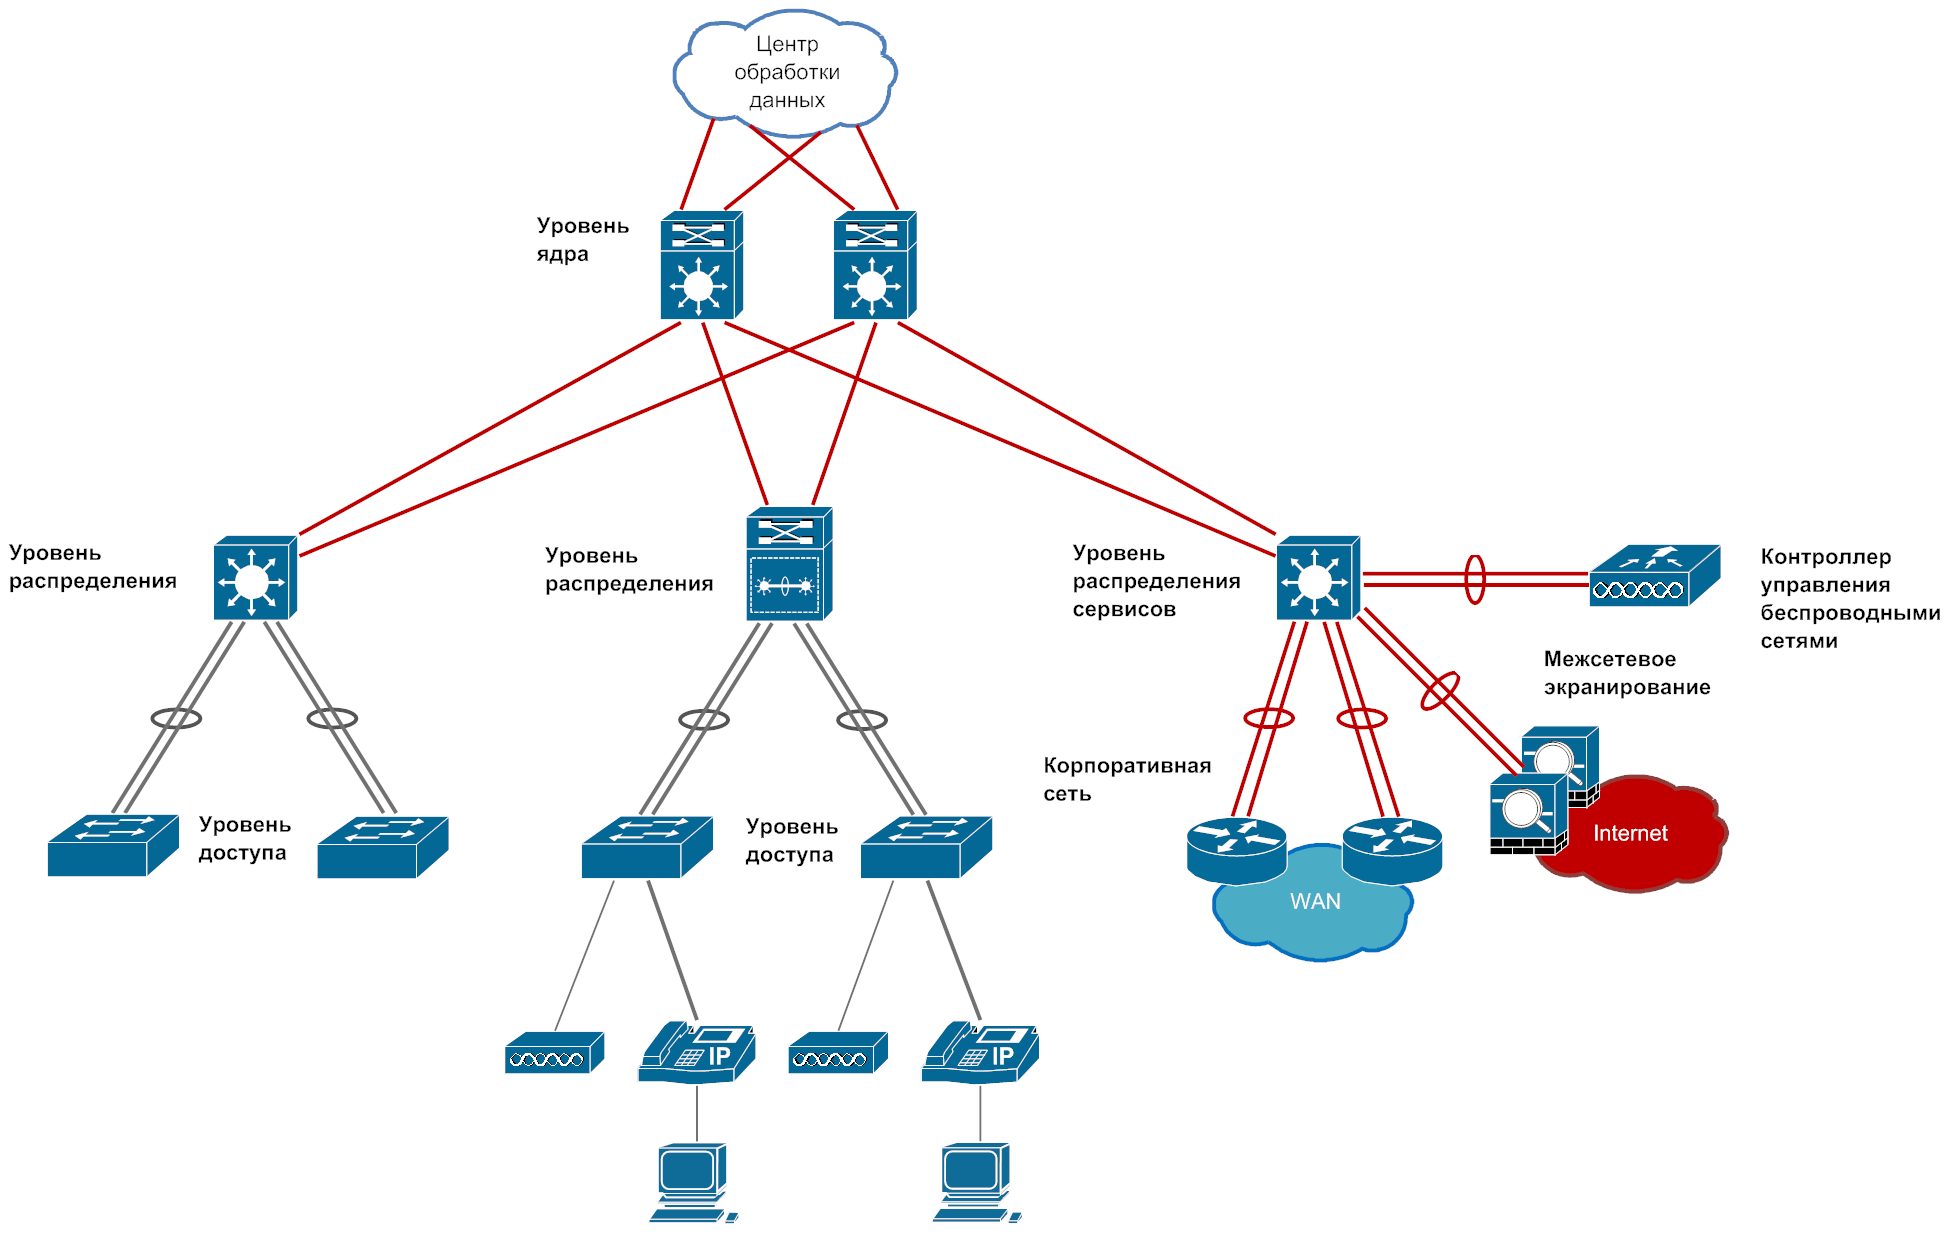 Трёхуровневая модель сети Cisco. Иерархическая модель сети от Cisco. Сетевая схема ядра Cisco. Структурная схема комплектации узла агрегации. Модель сетей доступа